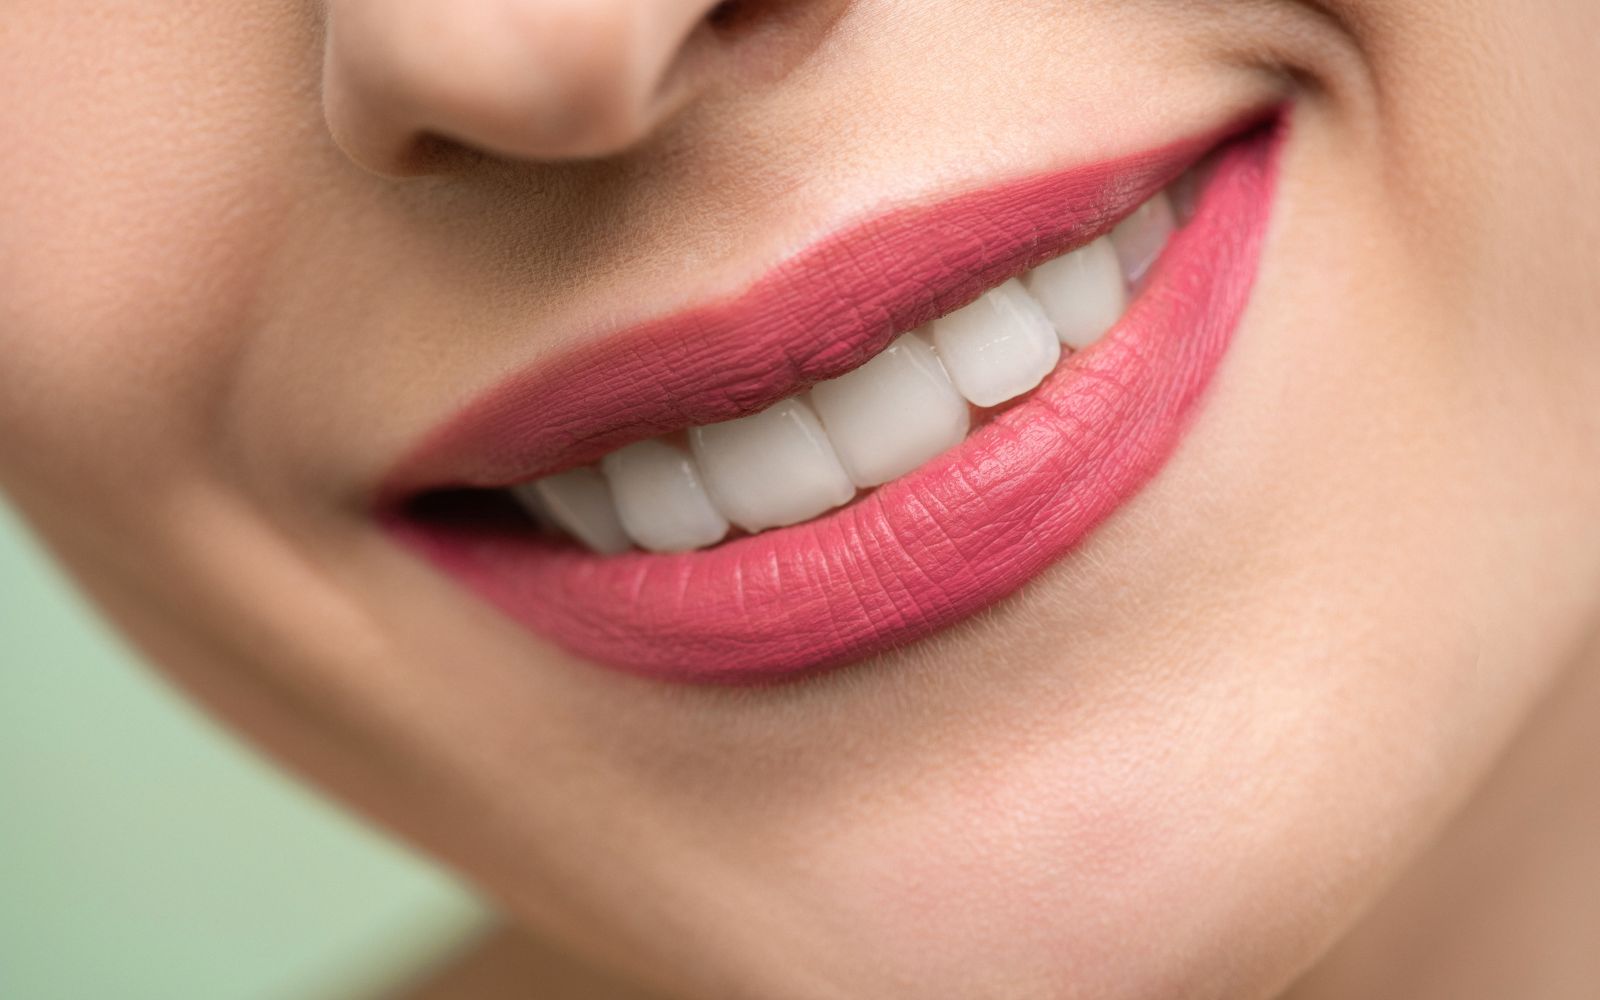 Професионално избелване на зъби - какво трябва да знаем за него.